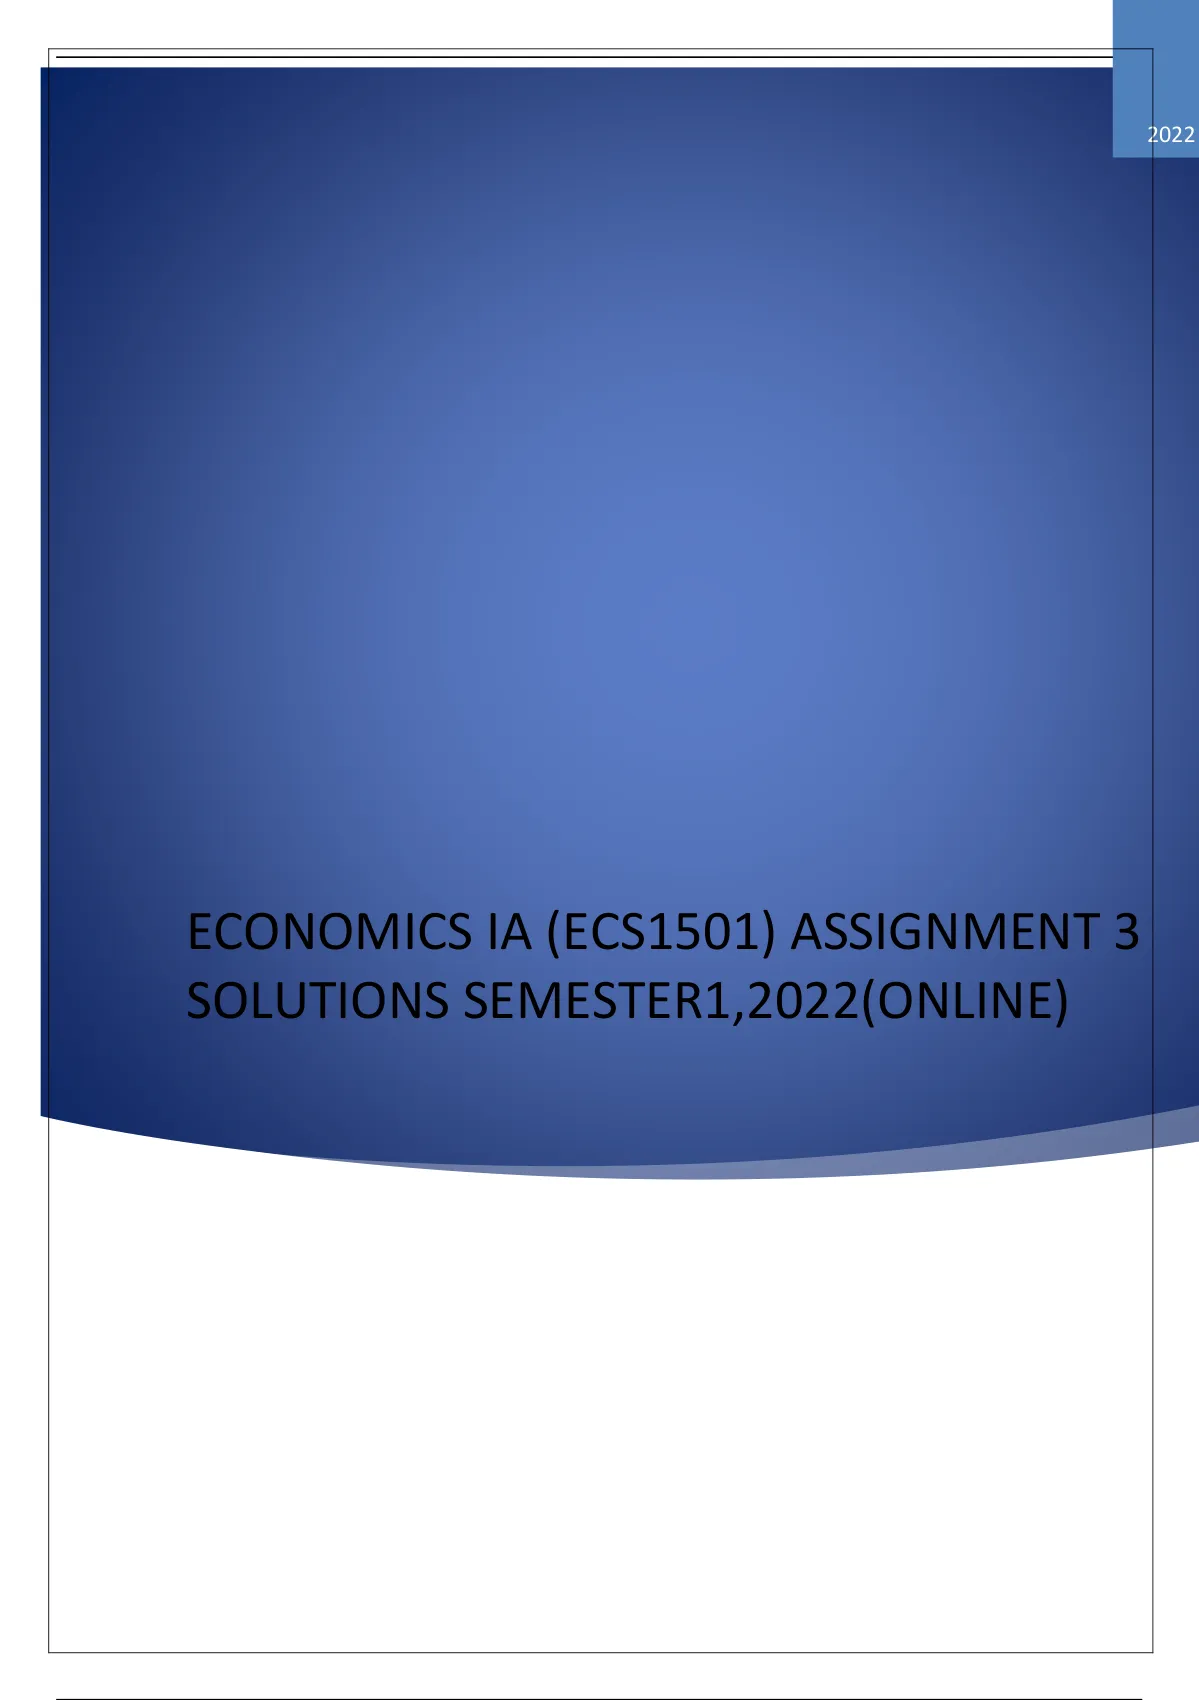 ecs1501 assignment 8 2022